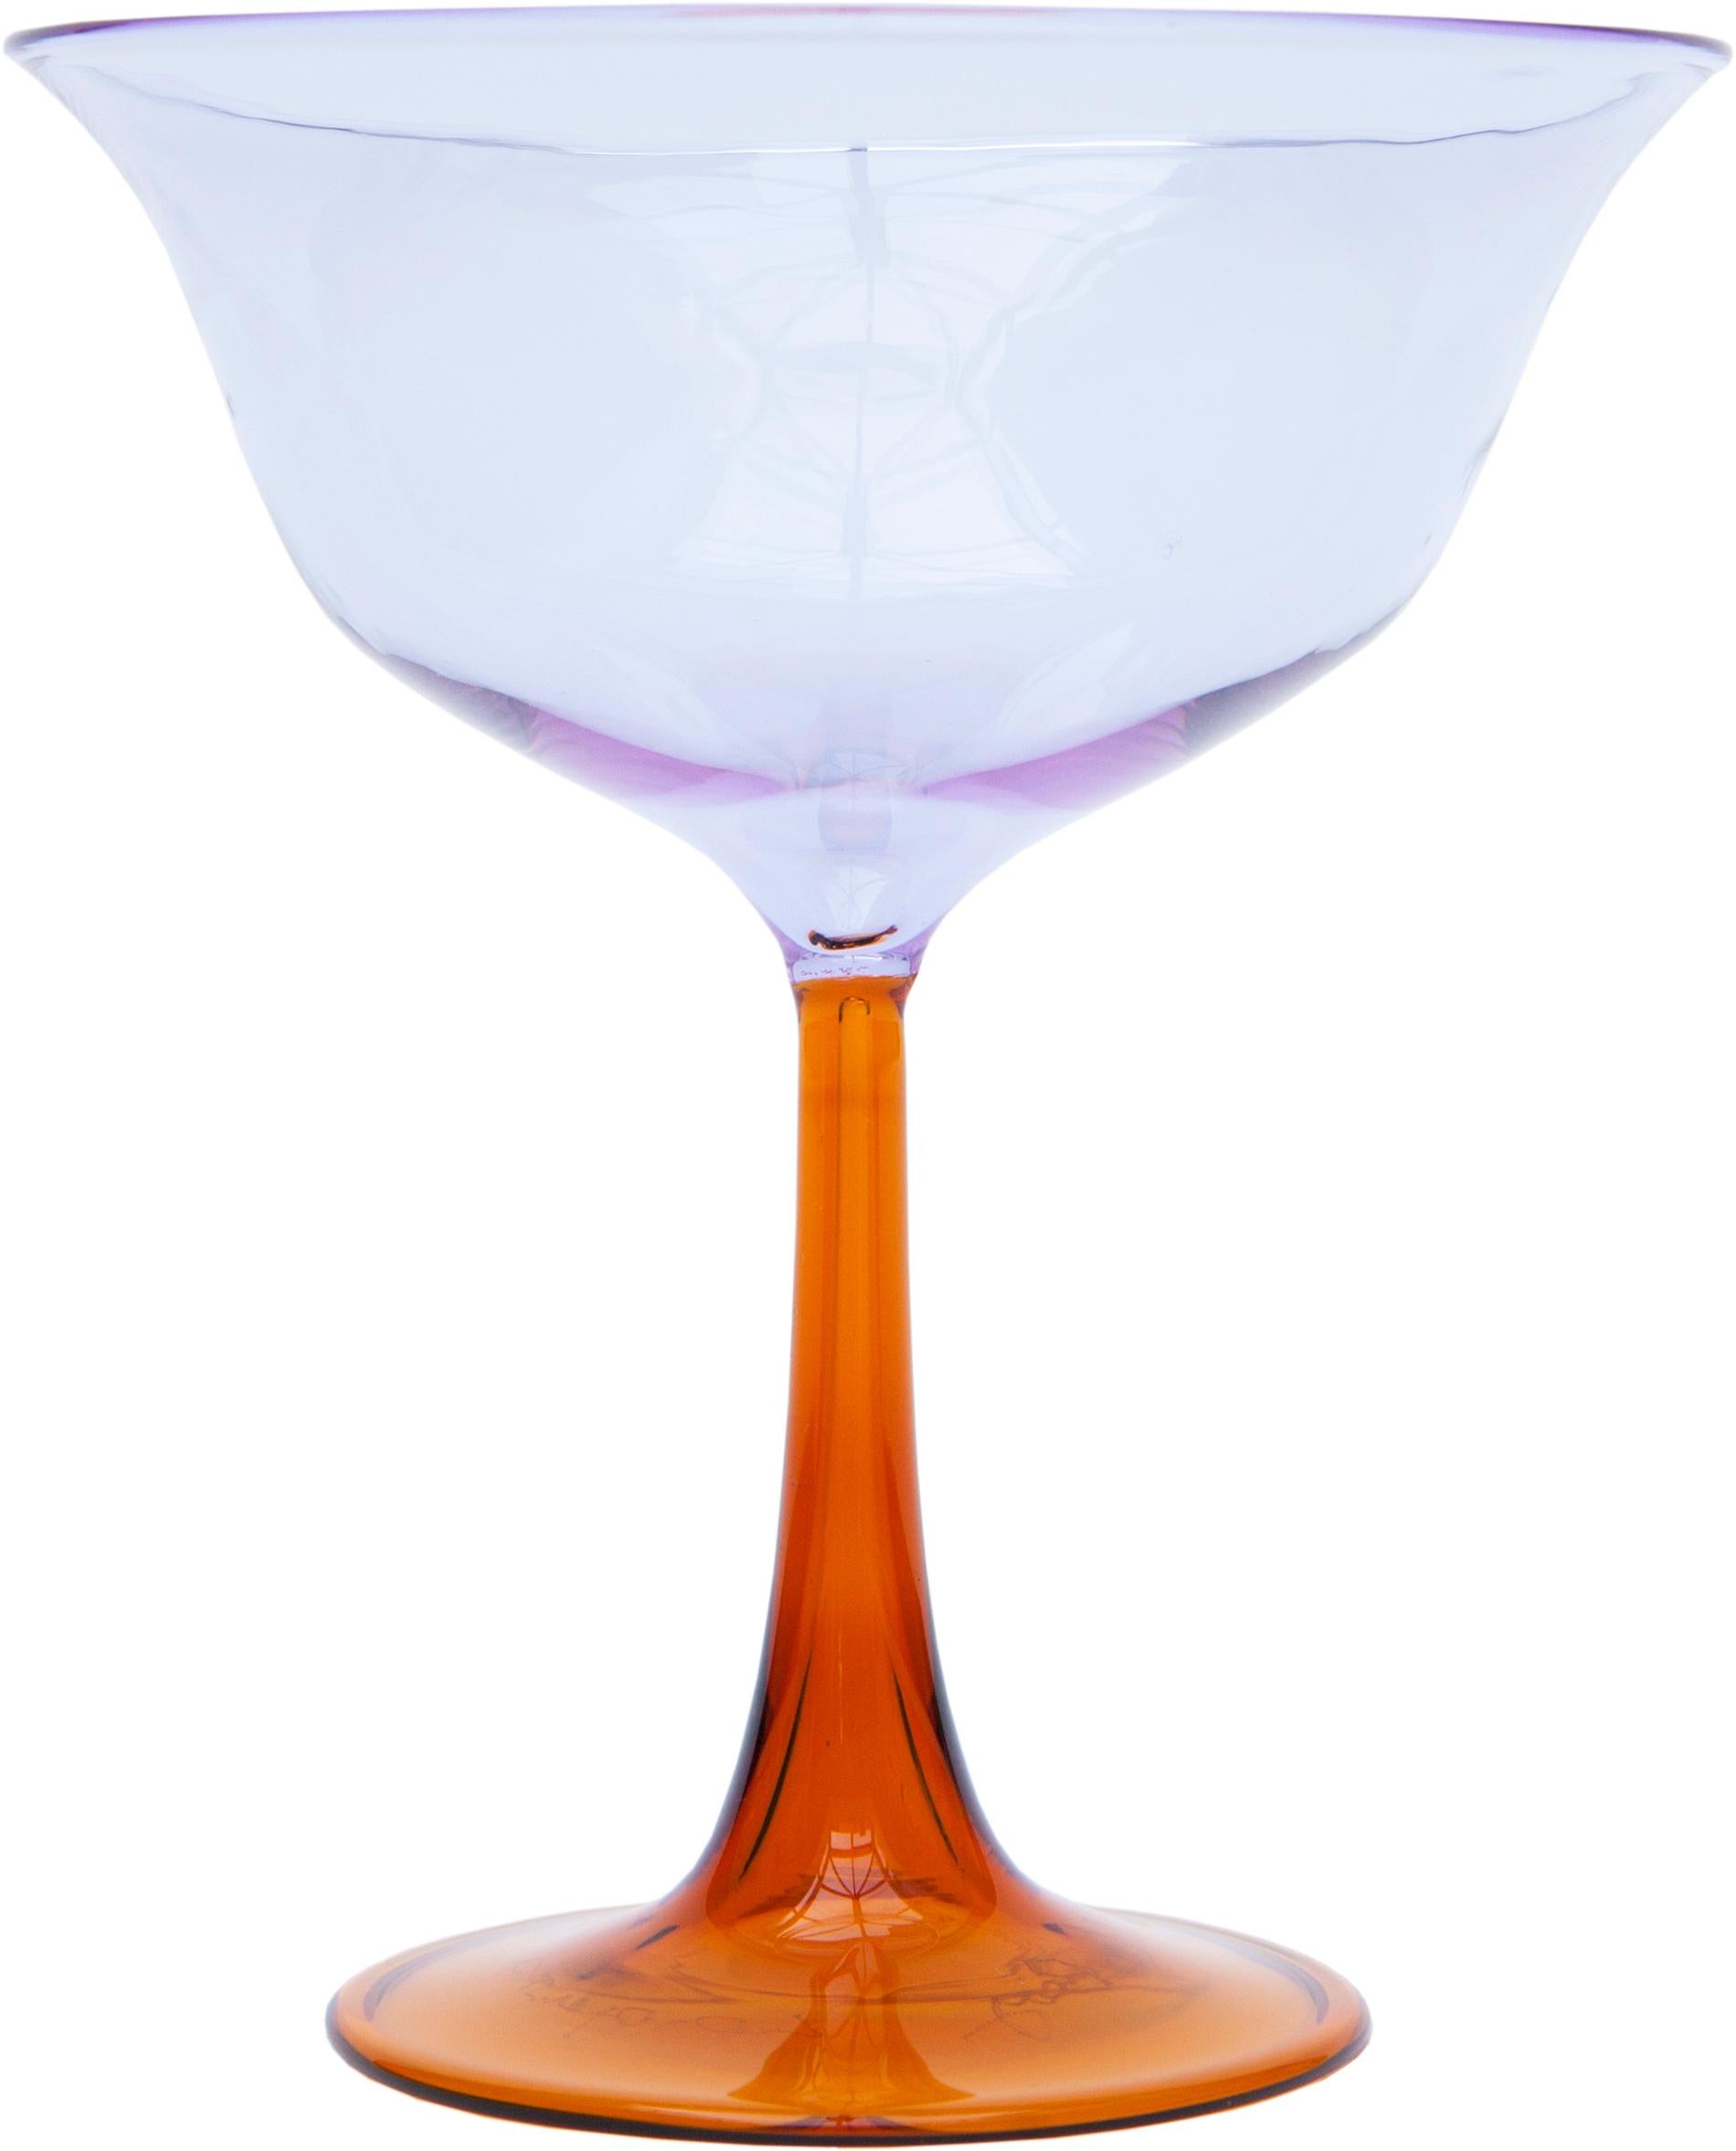 Campbell-Rey lance deux nouvelles collections de verres de Murano soufflés à la main et fabriqués en Pyrex. Baptisées Cosimo et Cosima, ces deux collections s'inscrivent dans le prolongement des relations étroites entre Campbell-Rey et le verrier